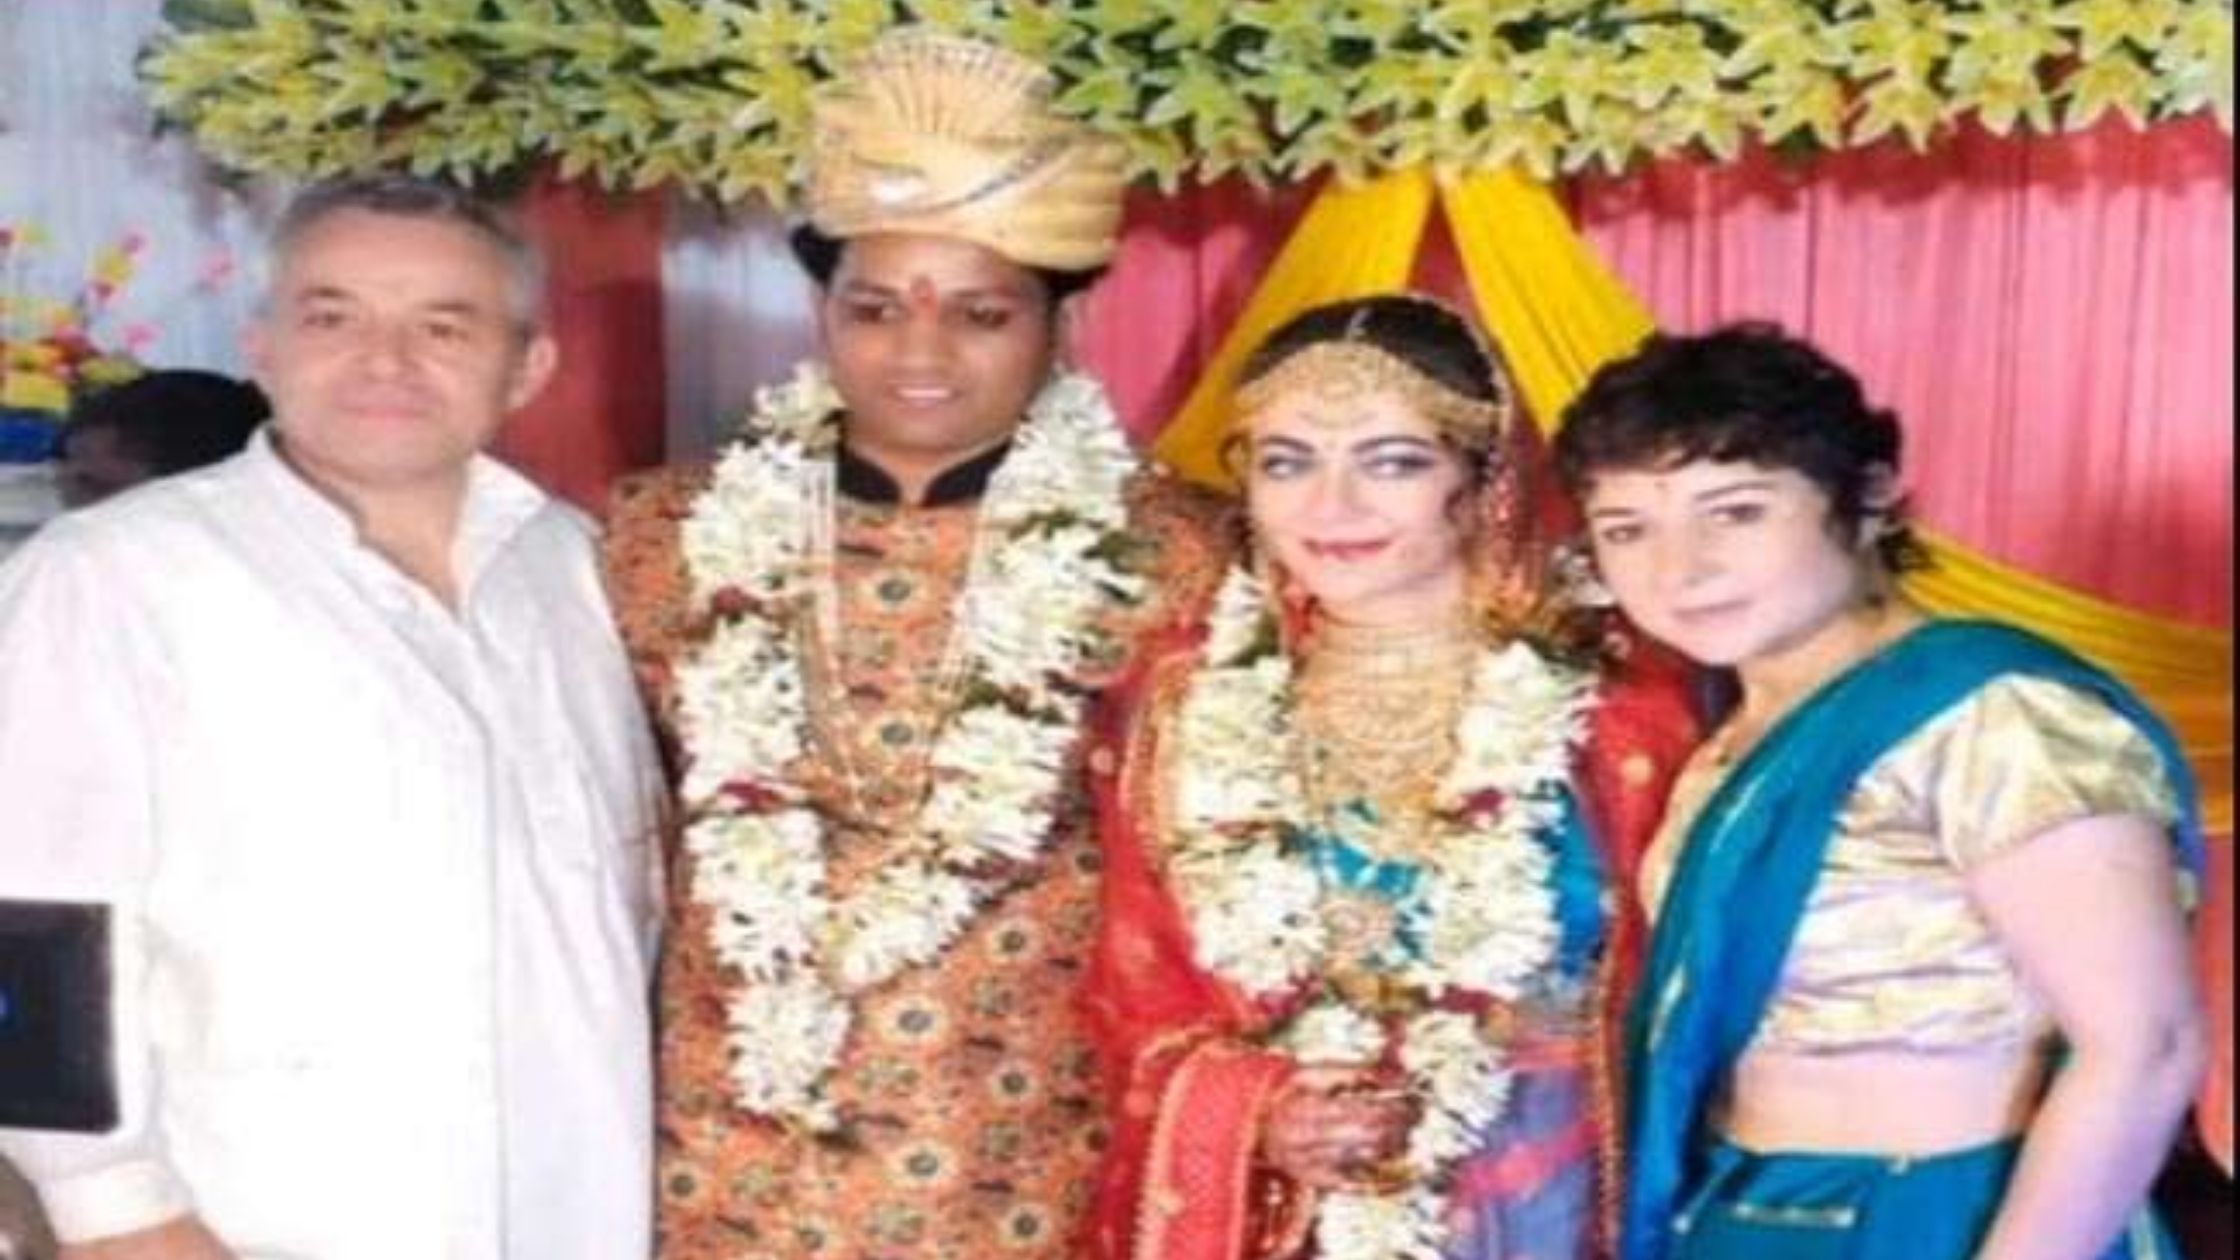 French mam came to Bihar to marry Bihari boy